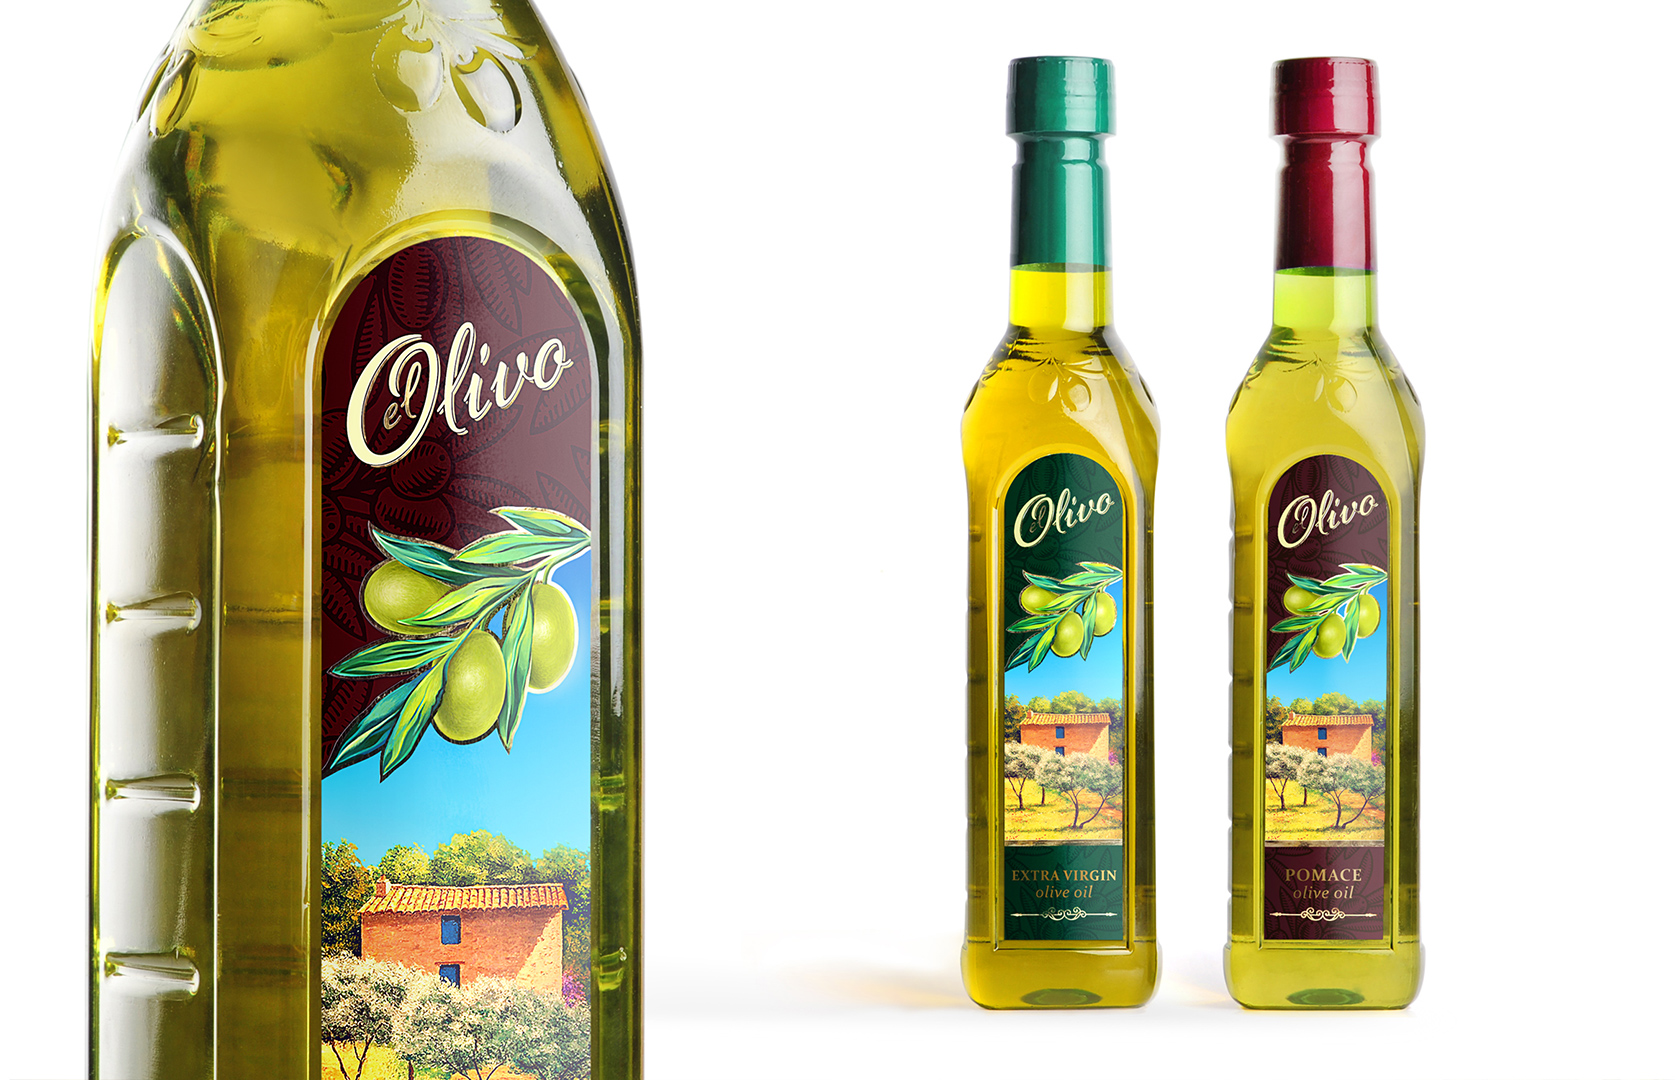 Упаковка оливкового масла